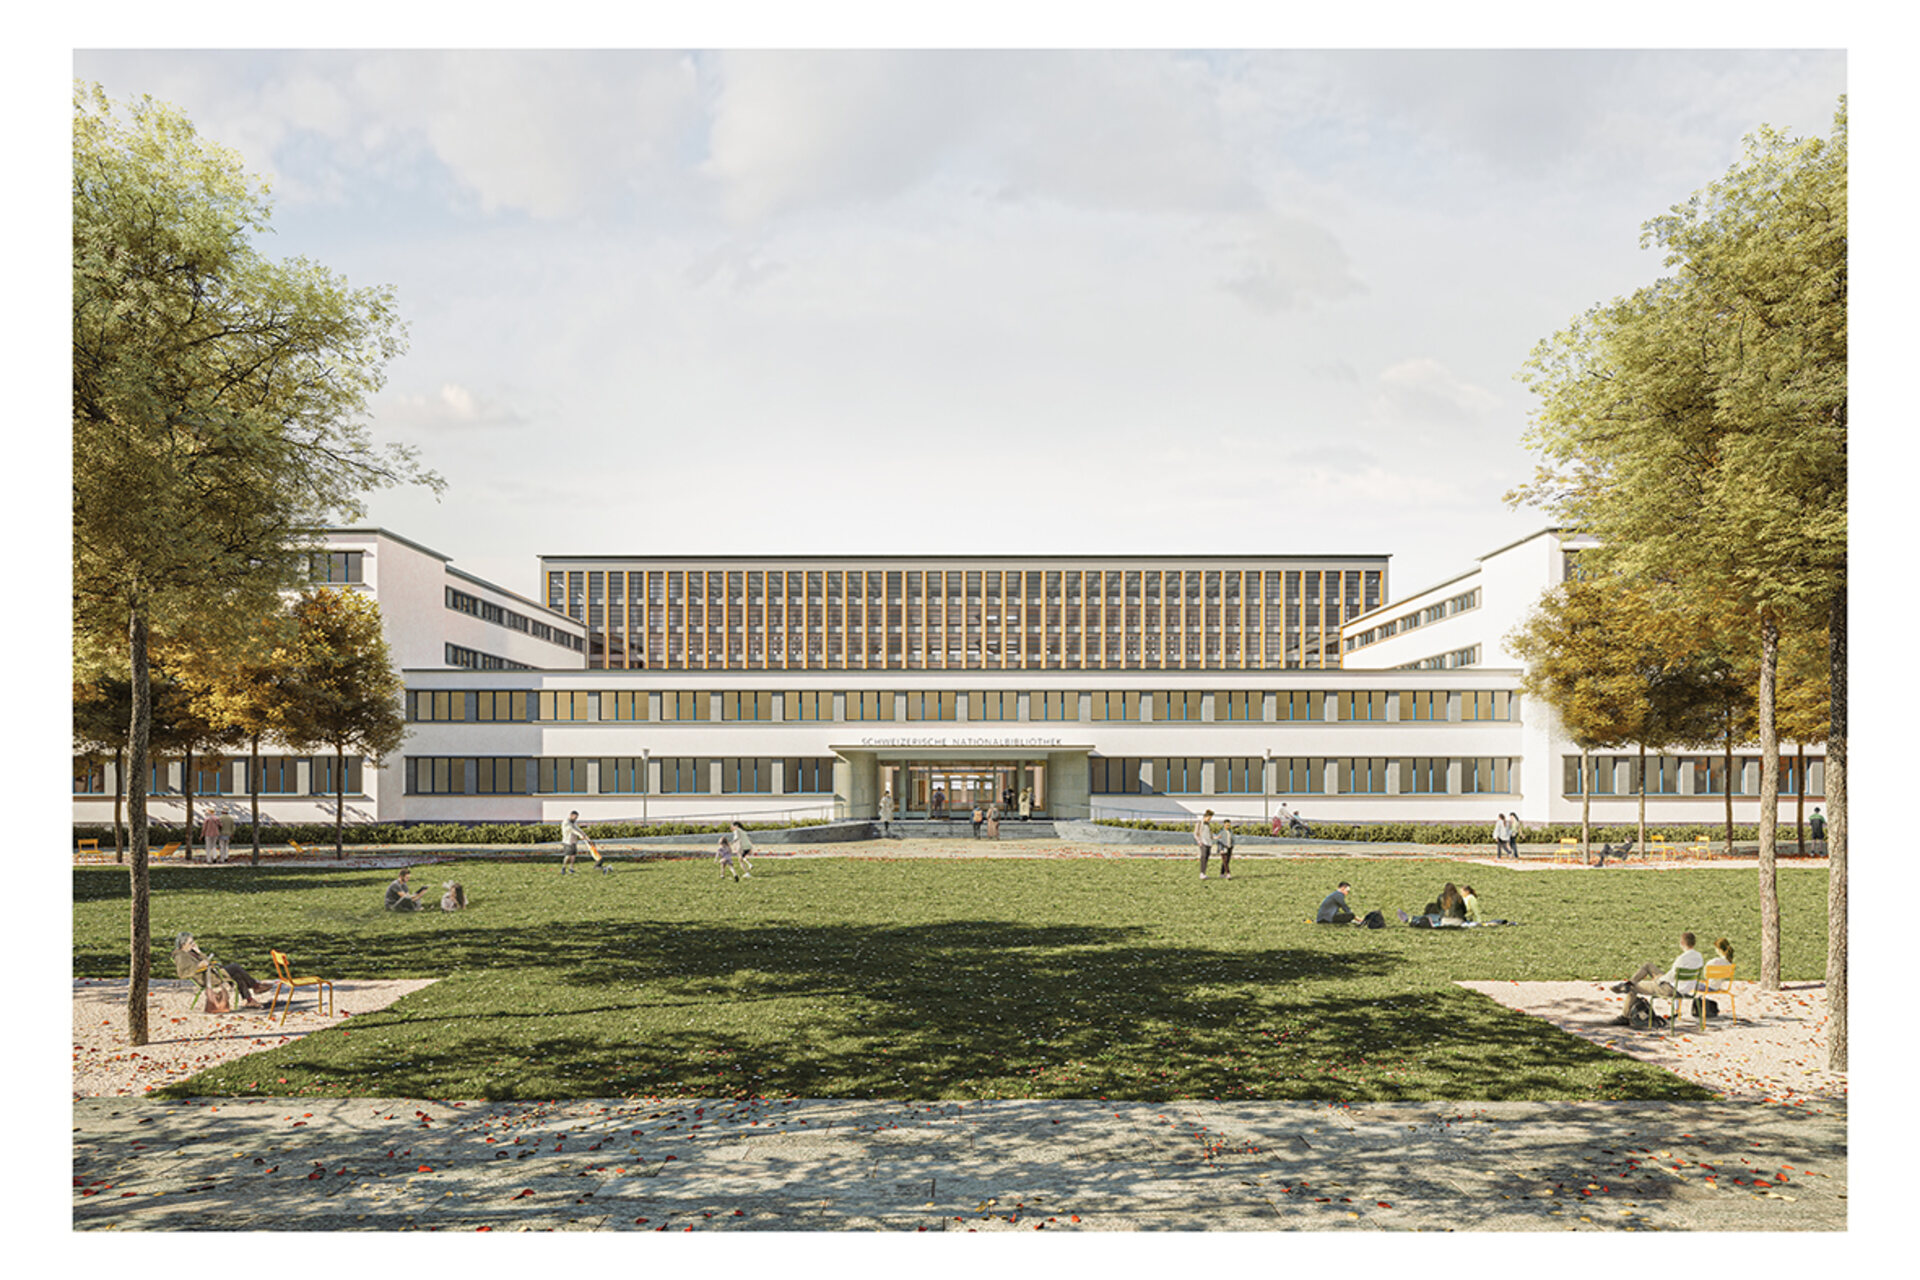 کتابخانه ملی سوئیس: تیمی از برنامه ریزان عمومی، به رهبری شرکت معماری Christ & Gantenbein در بازل، برنده رقابت برای بازسازی و توسعه مجدد NL شده اند.